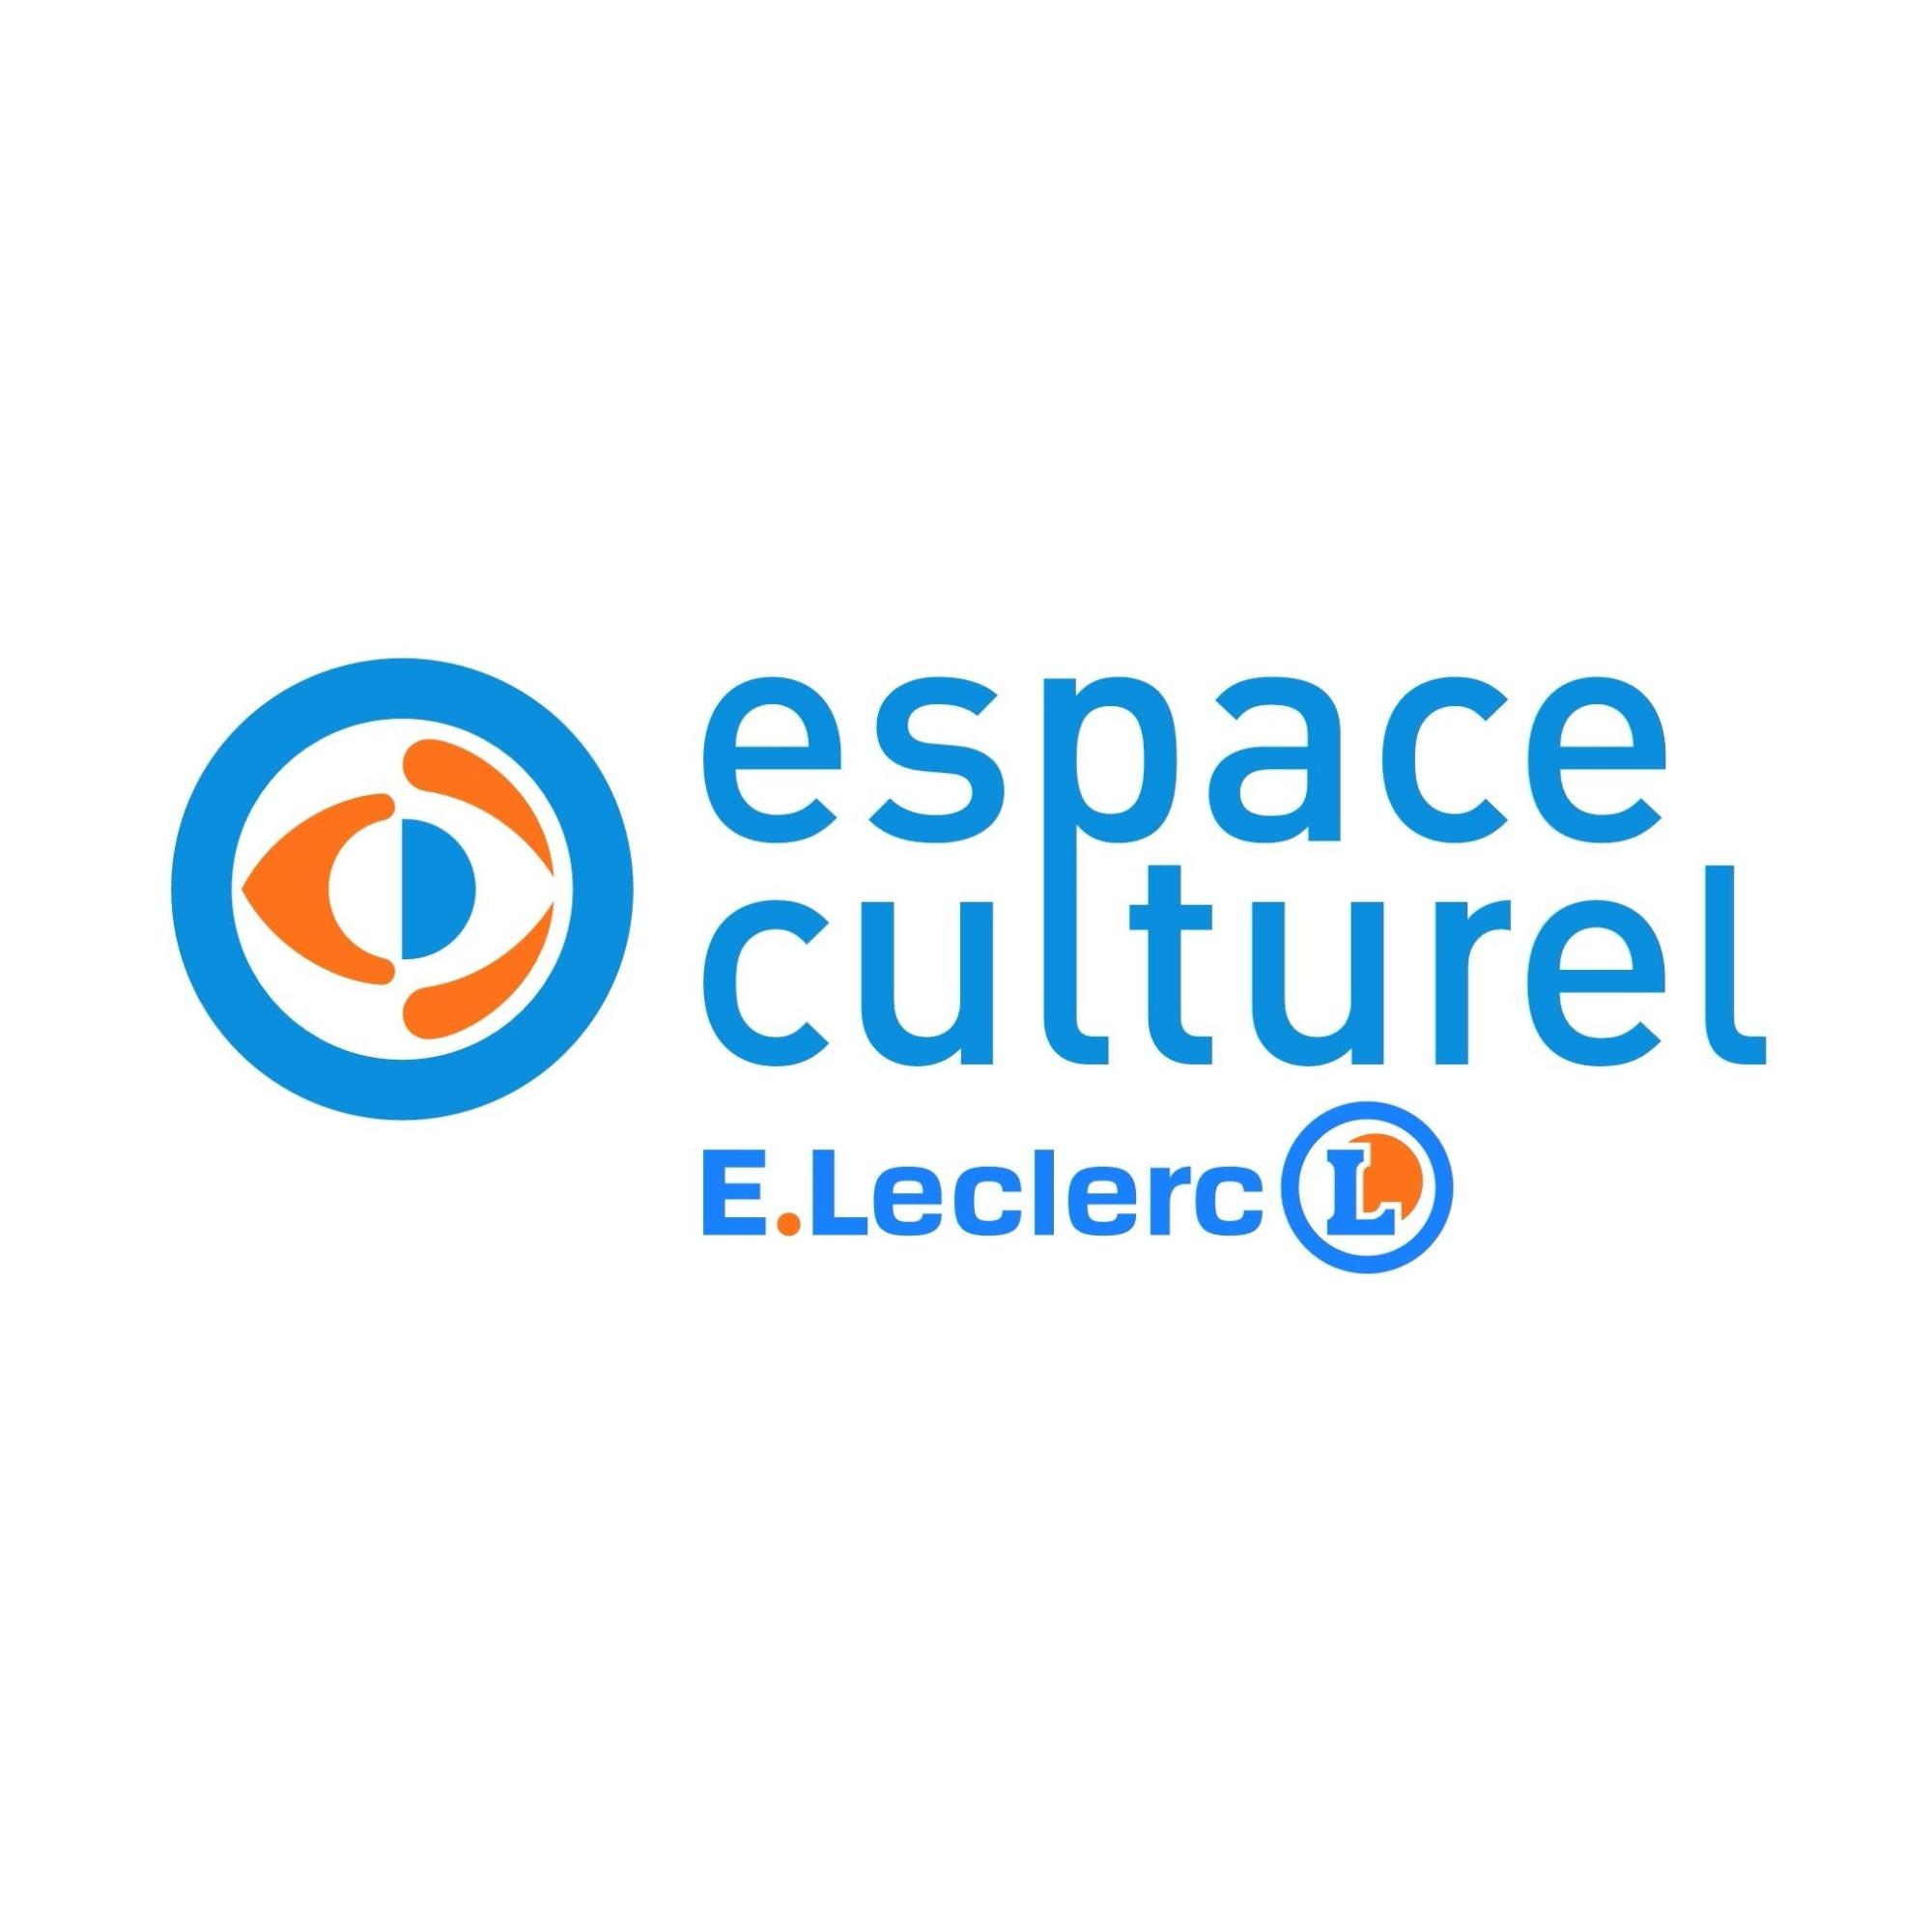 E.leclerc Espace Culturel Hauconcourt